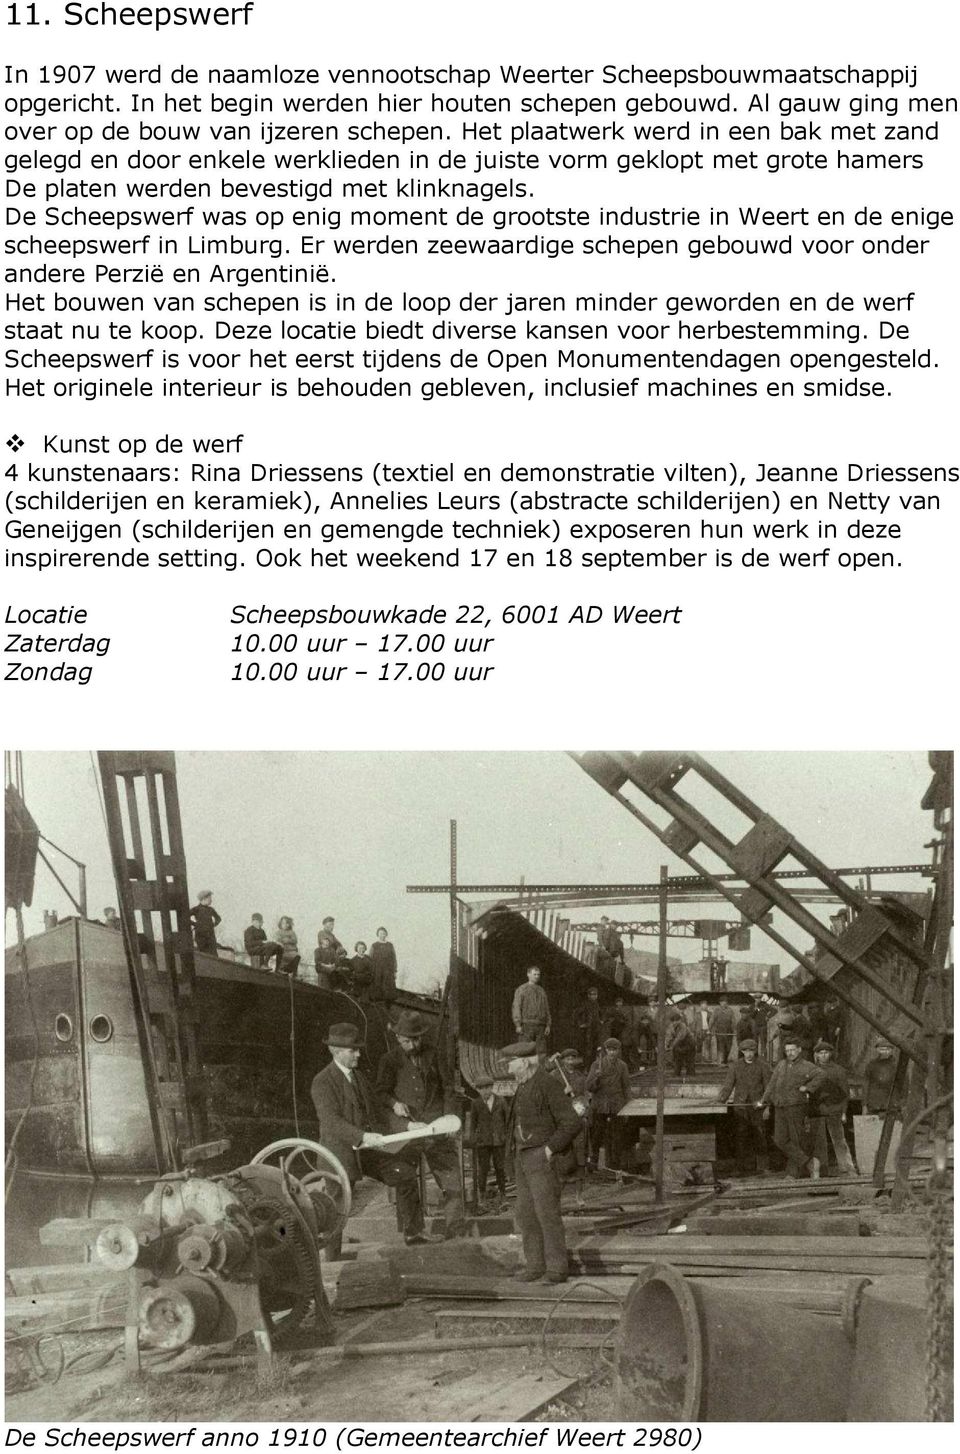 De Scheepswerf was op enig moment de grootste industrie in Weert en de enige scheepswerf in Limburg. Er werden zeewaardige schepen gebouwd voor onder andere Perzië en Argentinië.